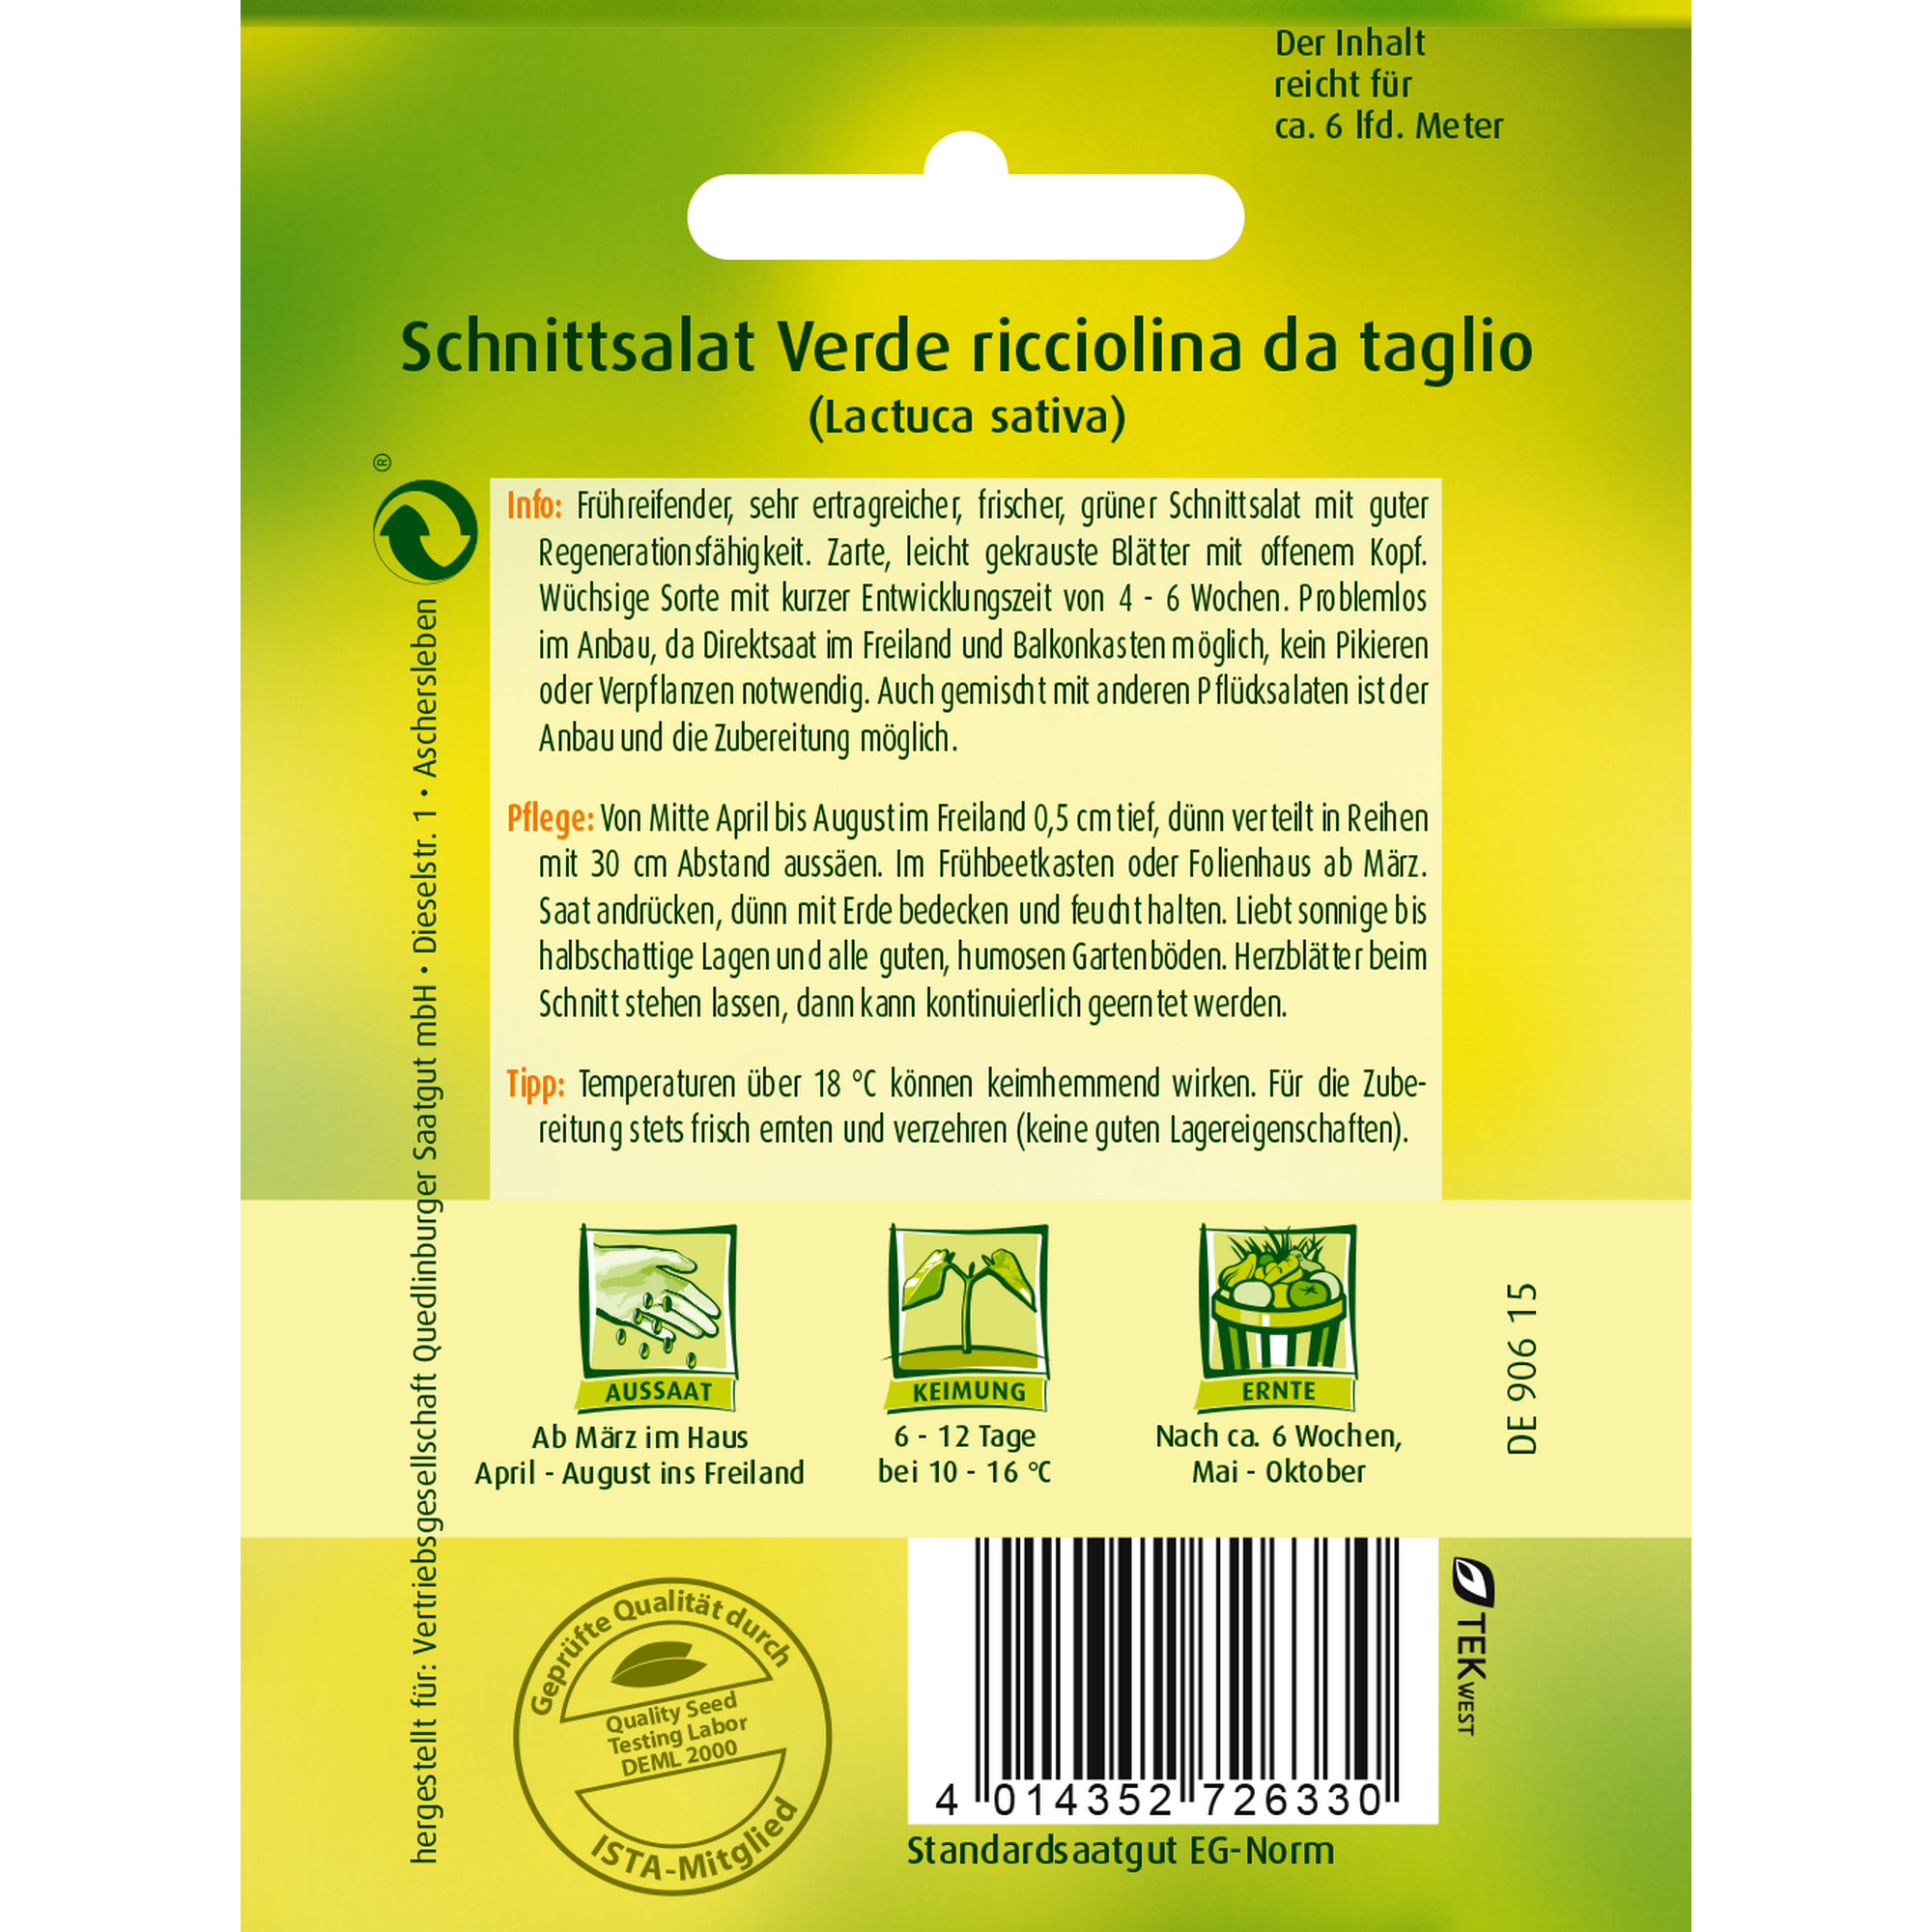 Schnittsalat 'verde ricciolina da taglio' + product picture